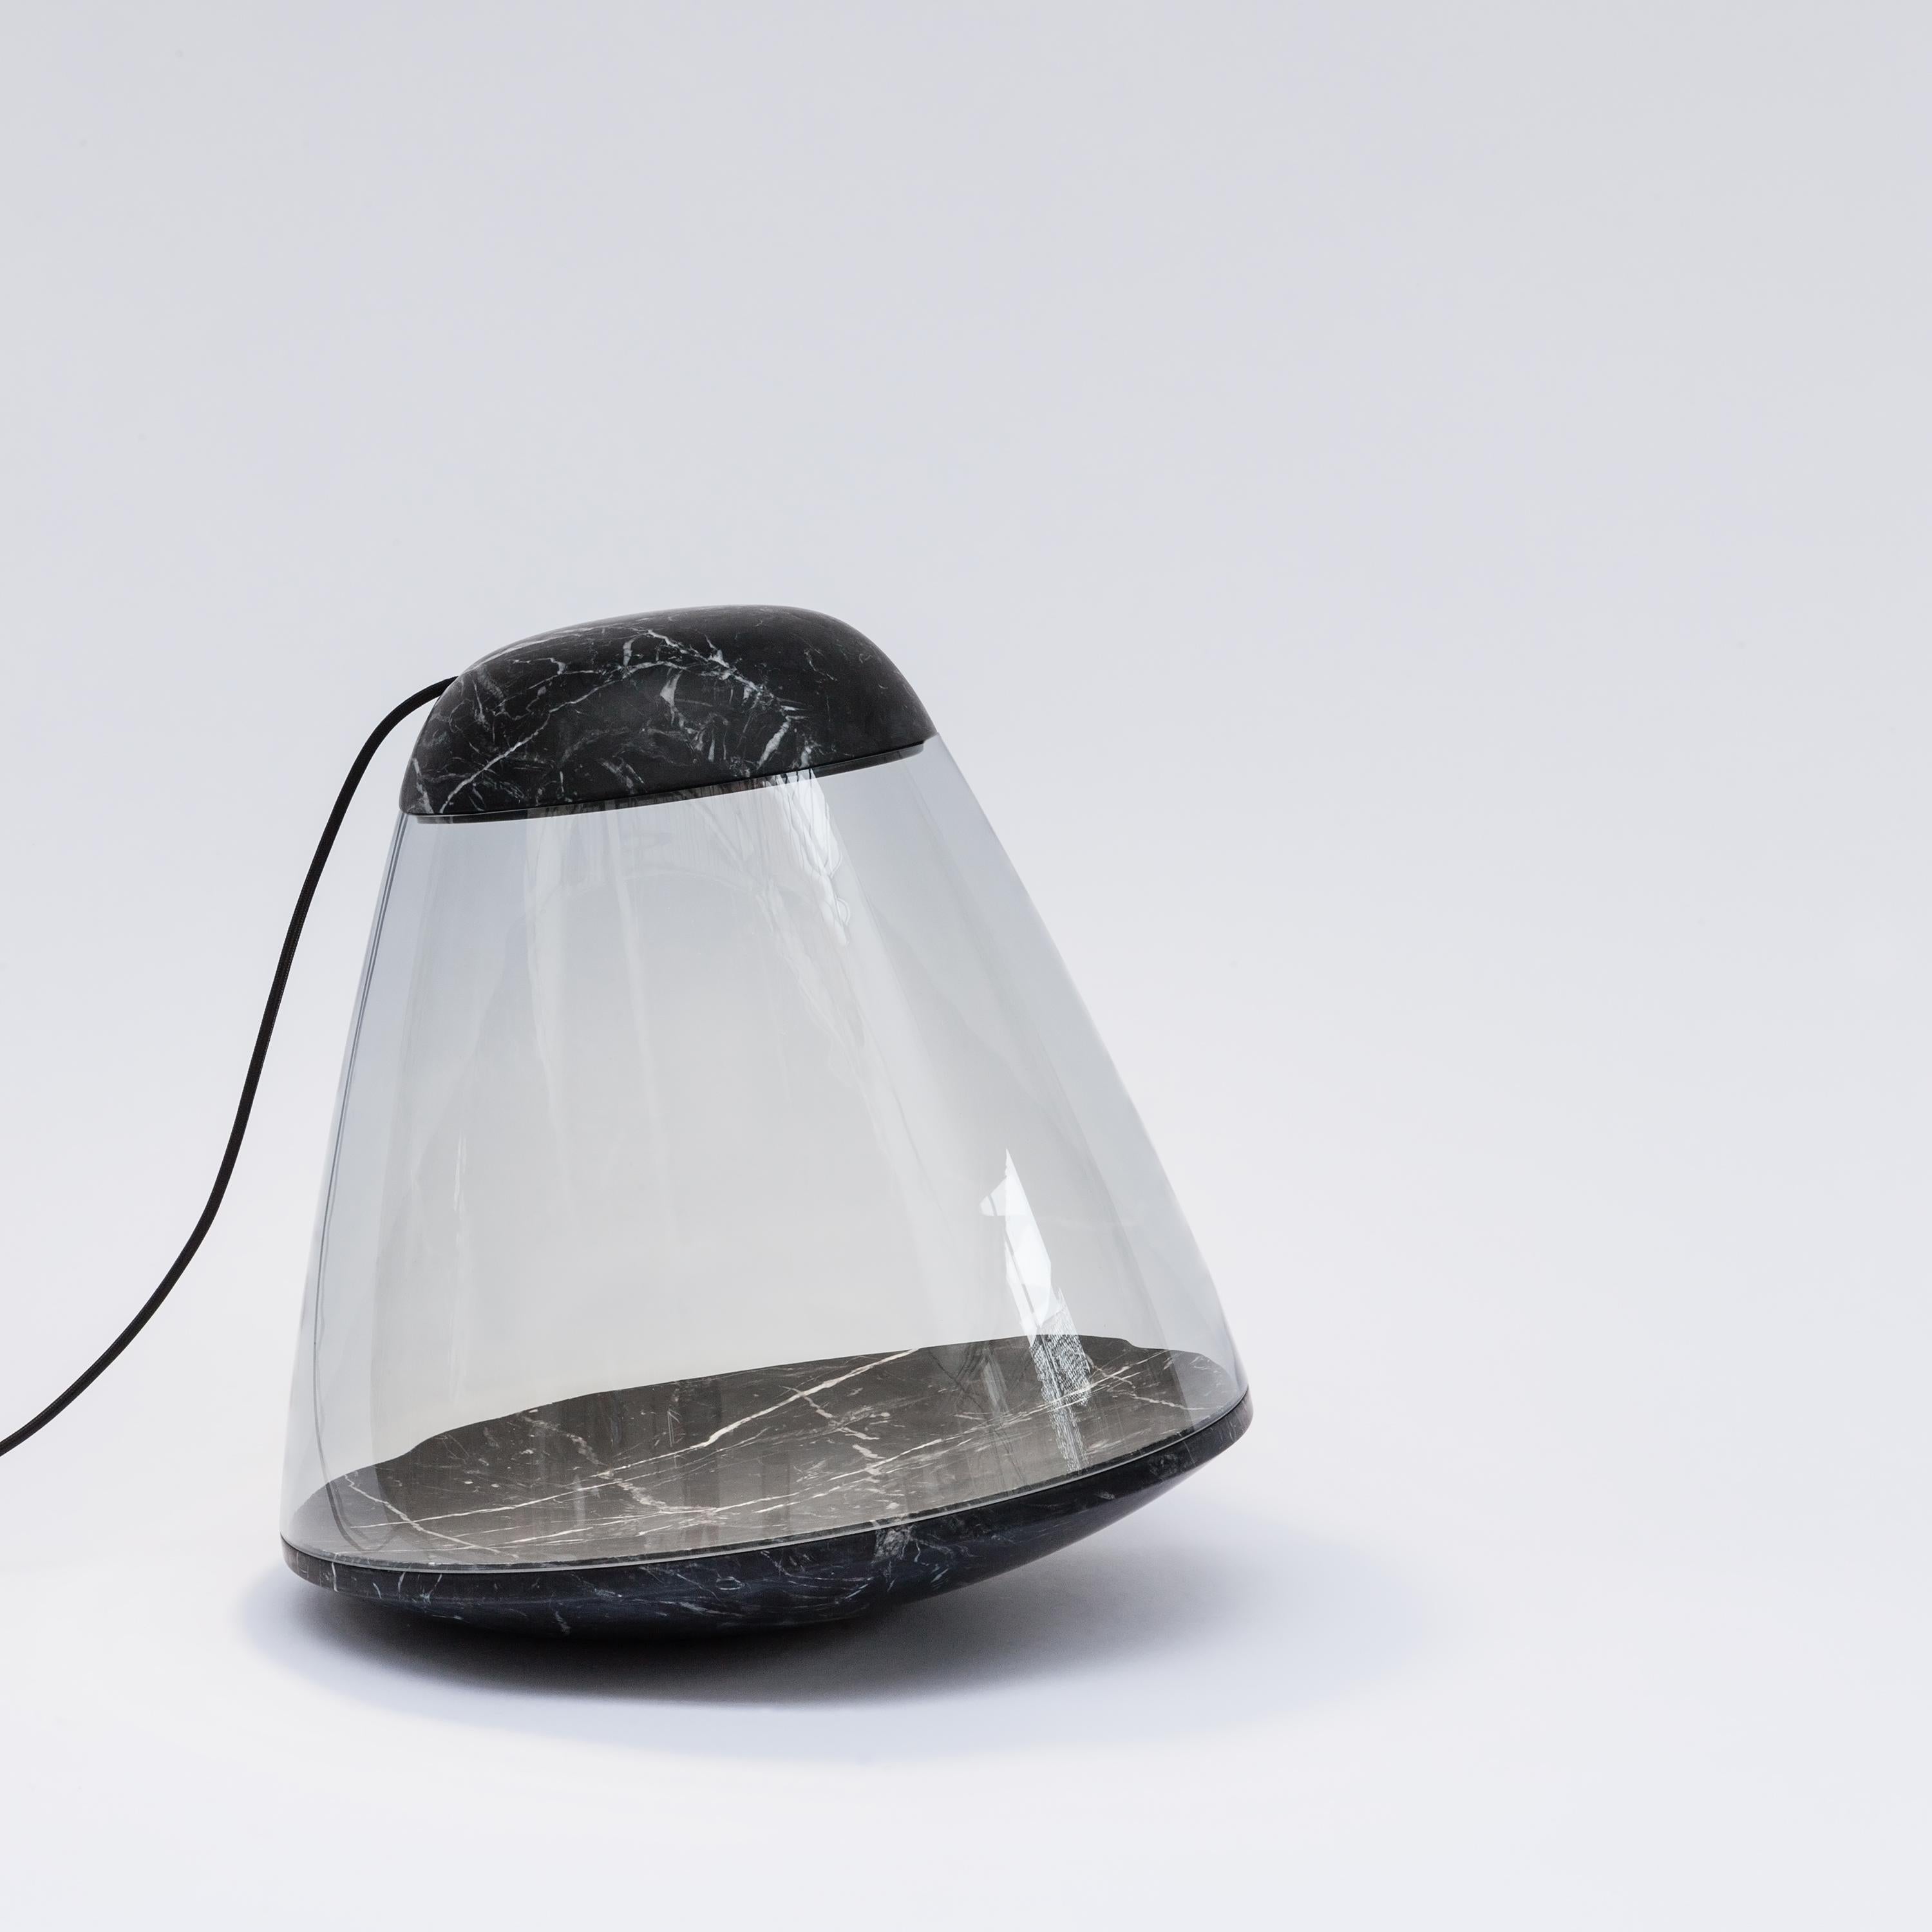 Apollo Stehleuchte, Dan Yeffet & Lucie Koldova

Apollo ist eine Stehleuchte, die die Brutalität von Marmor mit der Leichtigkeit und Transparenz von Glas verbindet. Der Lichtstrahl bringt die Schönheit und die Details des Materials zur Geltung.